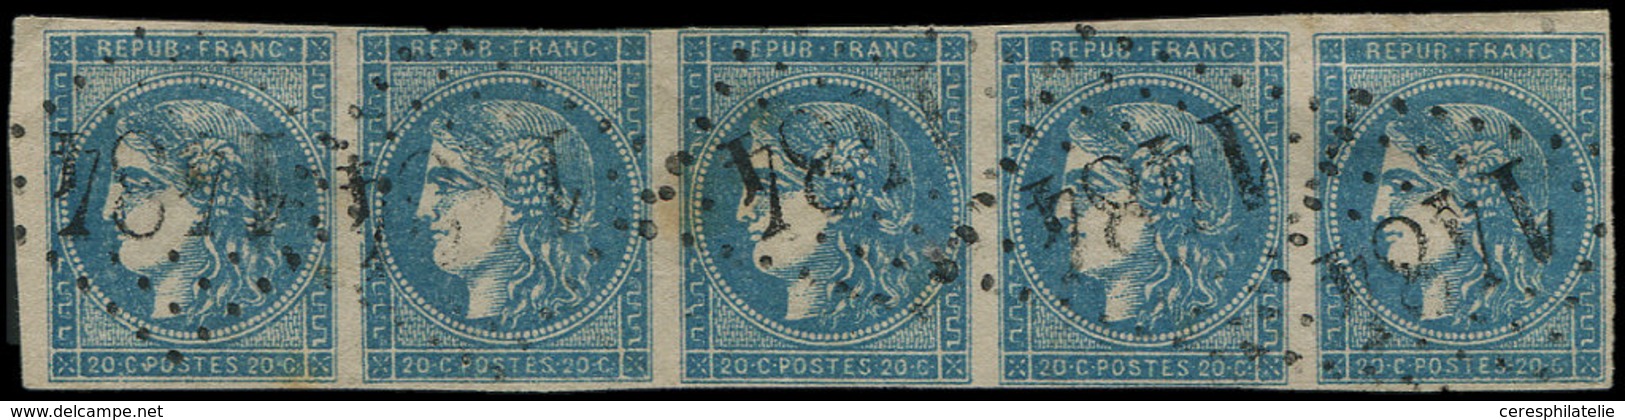 EMISSION DE BORDEAUX - 45C  20c. Bleu, T II R III, BANDE De 5 Obl. GC 1484, Filet Effleuré S. 2e T., RR En Bande, TB, Co - 1870 Bordeaux Printing